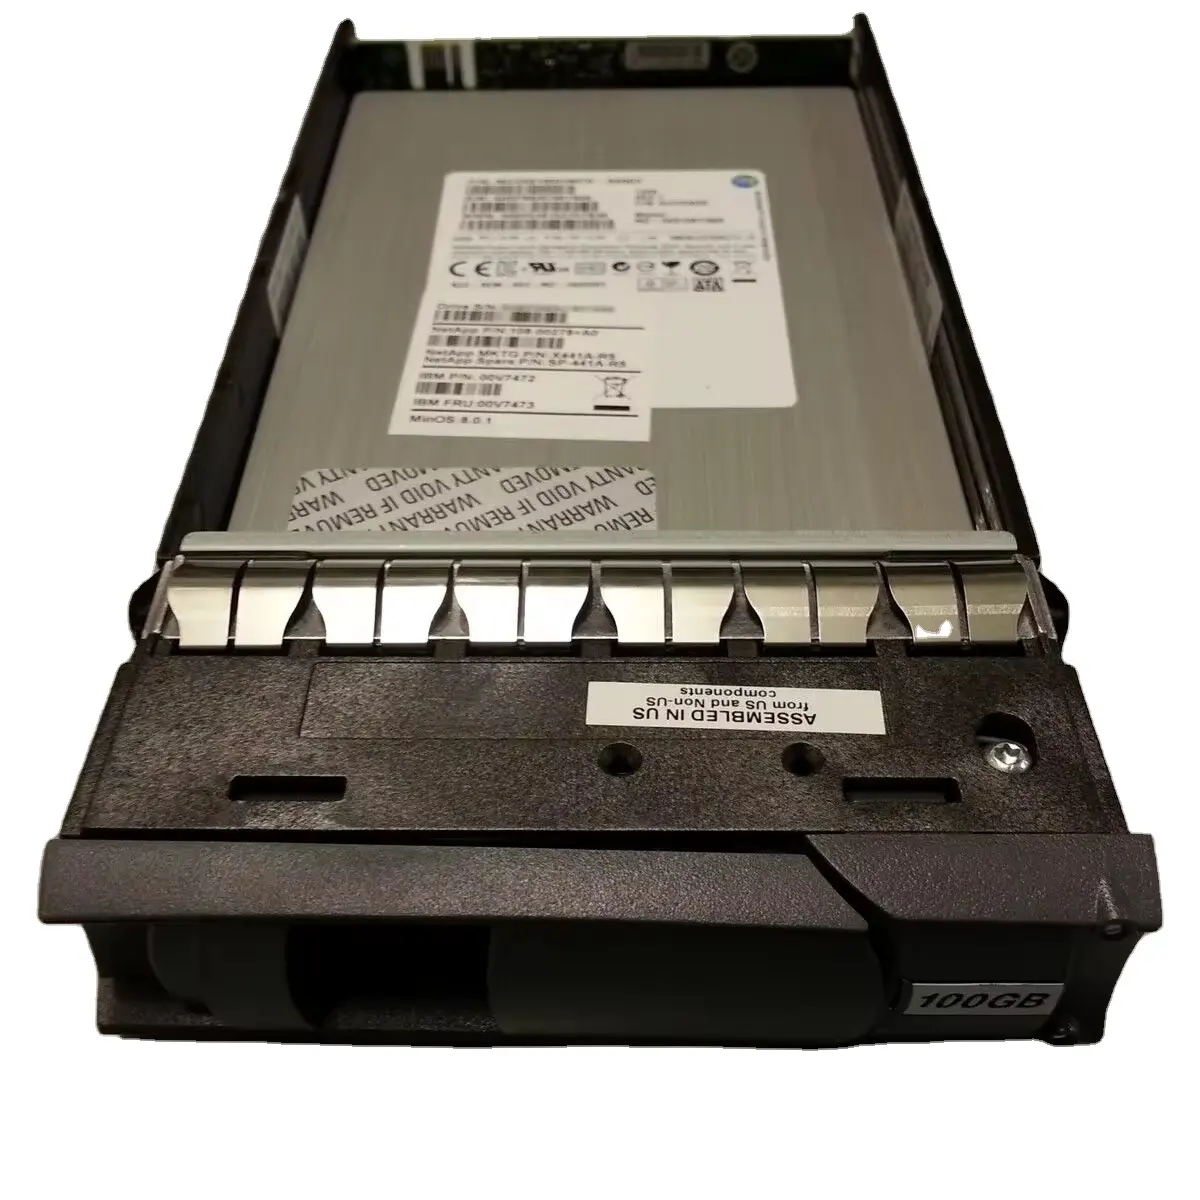 محرك الأقراص الصلبة NETAPP X441A-R5 عالي الأداء 100 جيجابايت SAS 6G LFF SSD